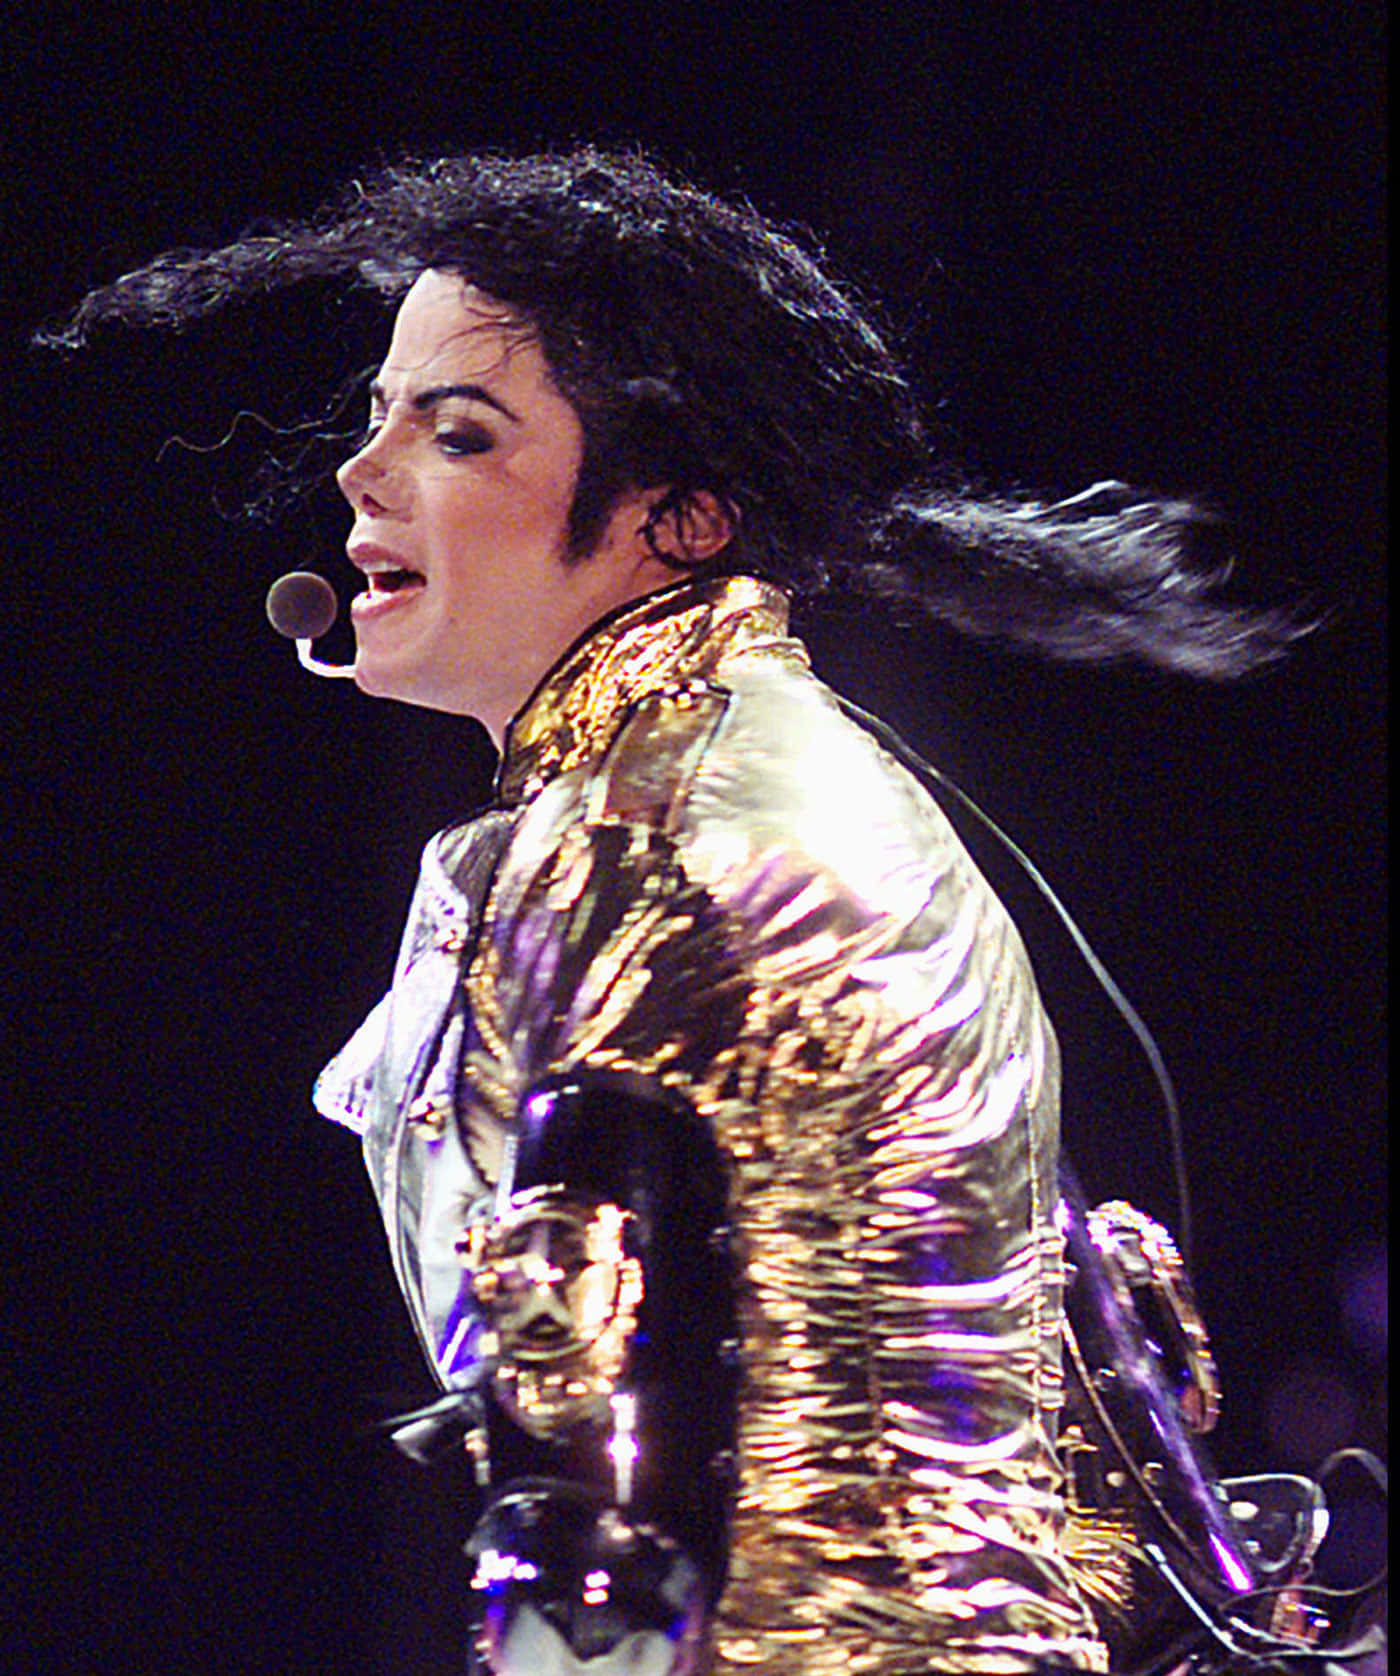 Billeder af Michael Jackson pynte papiret.